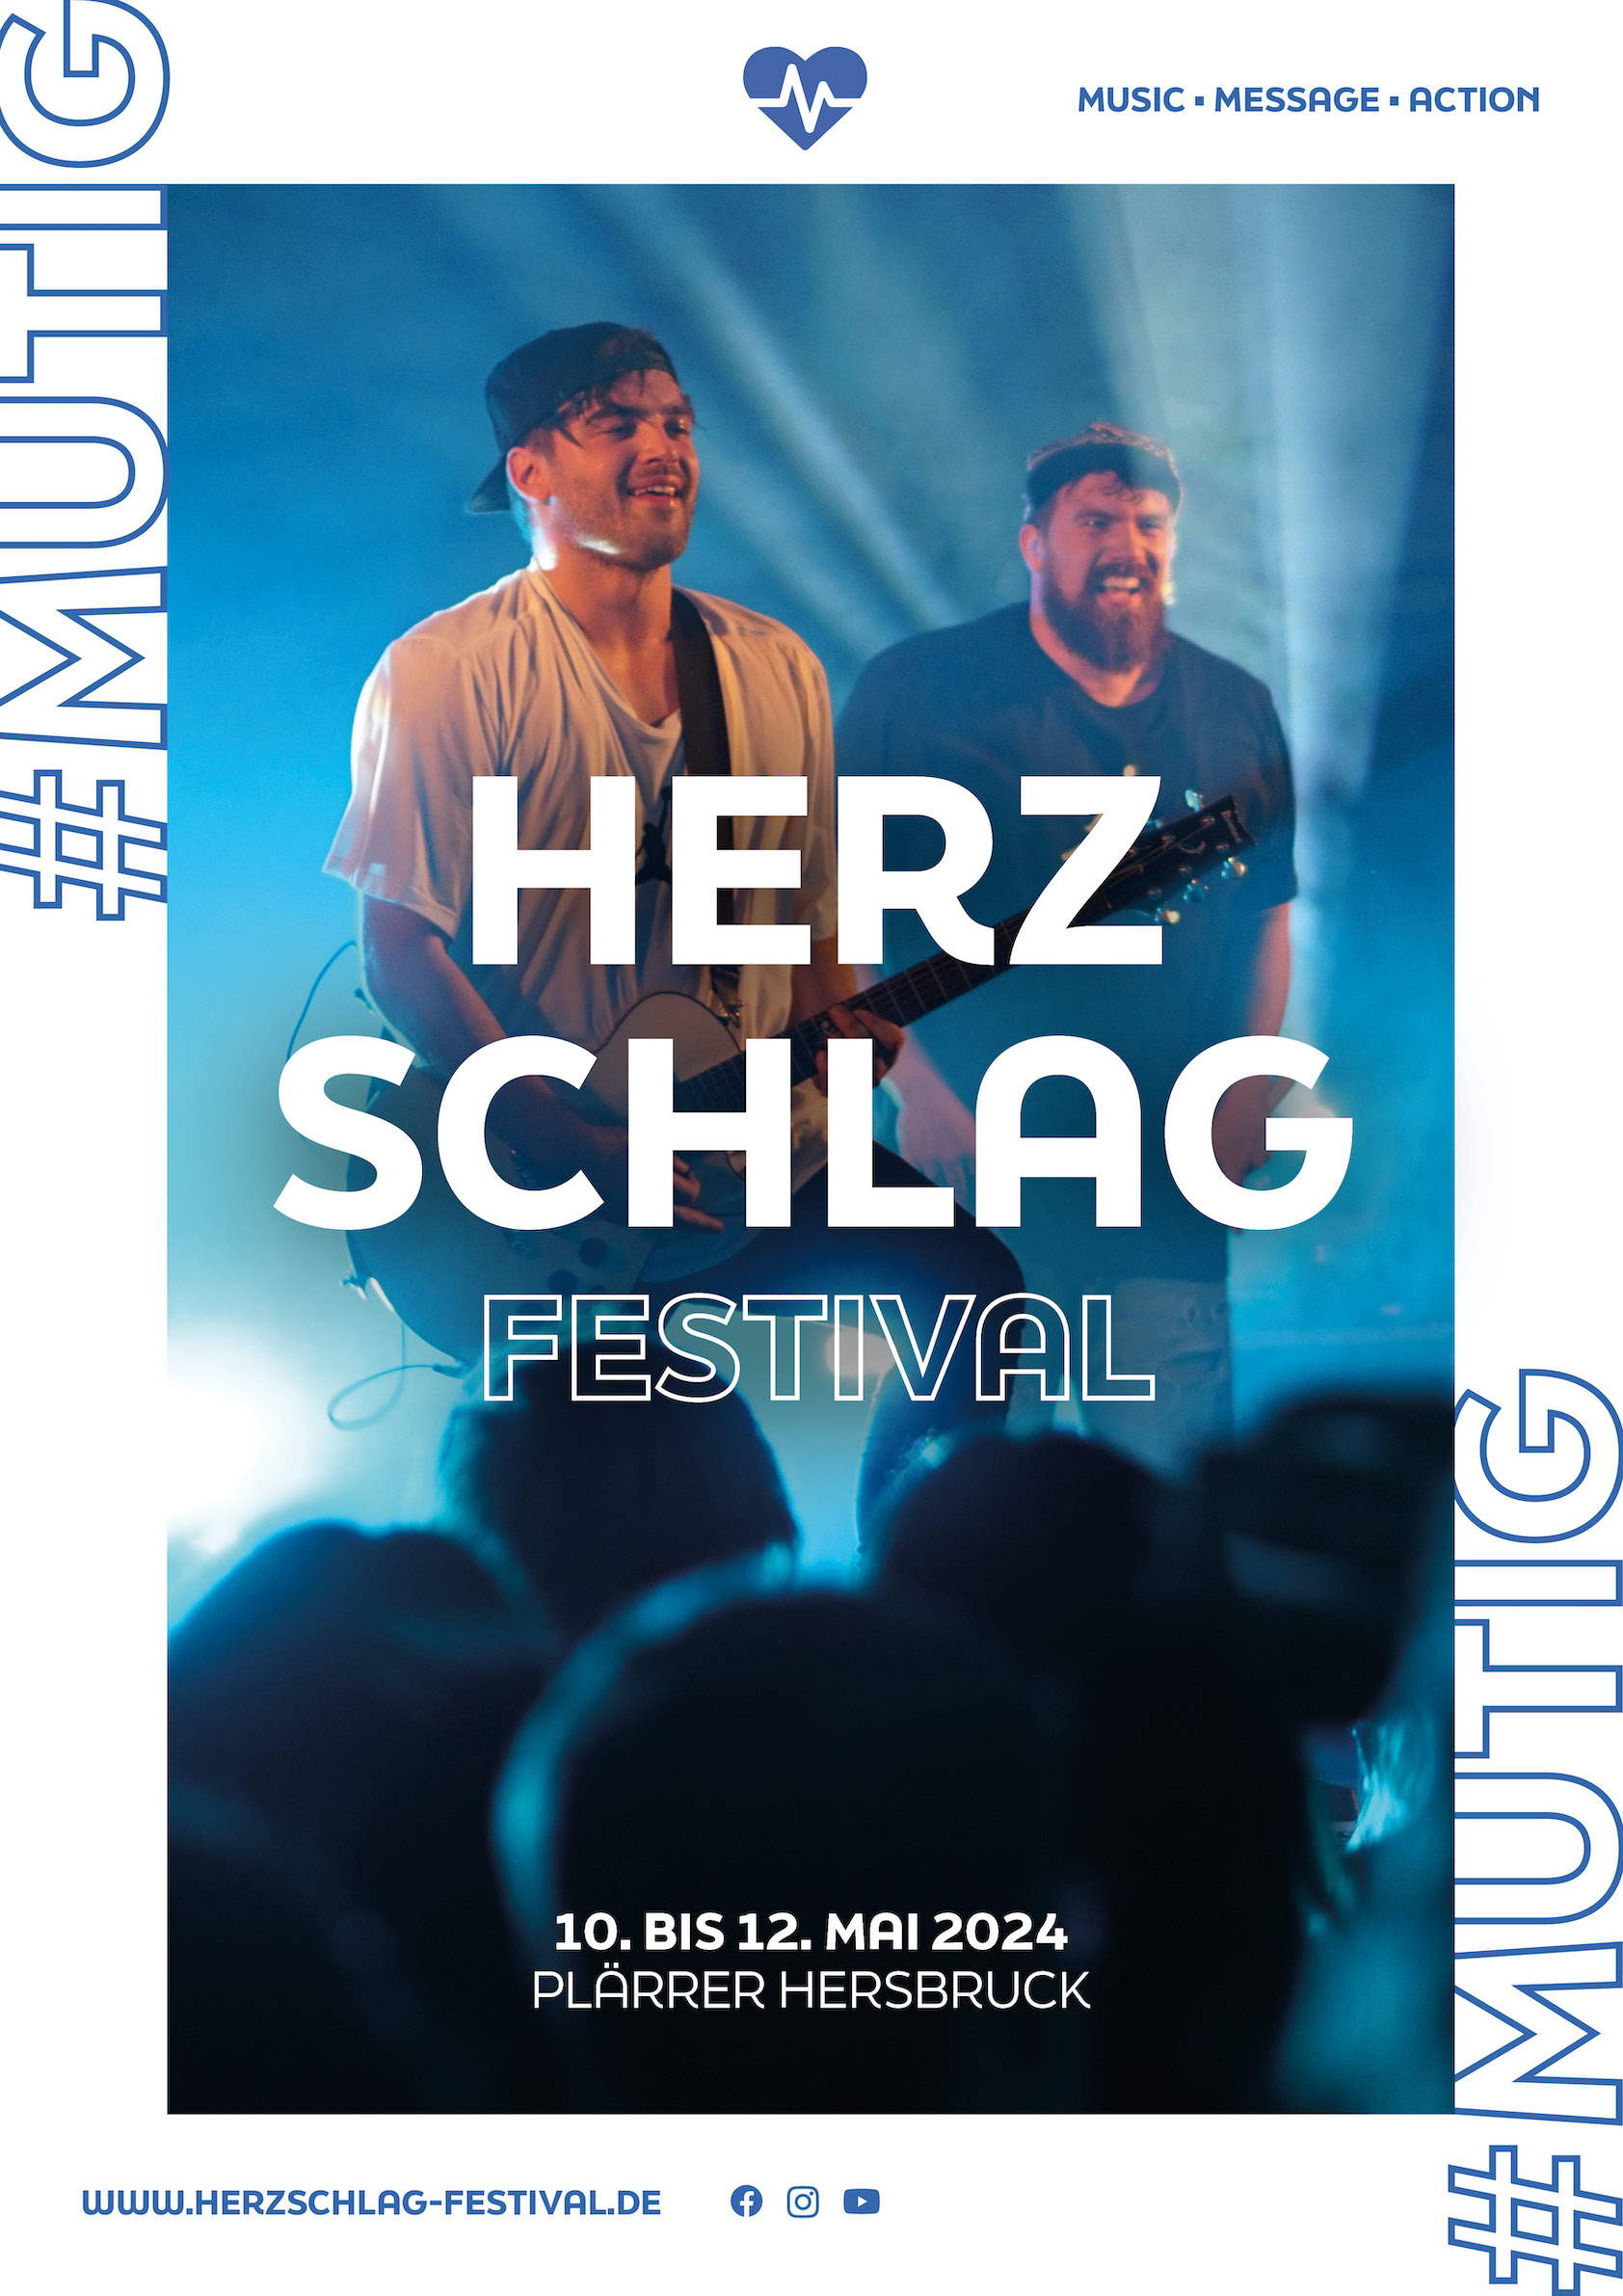 Herzschlag Festival #mutig, 10. bis 12. Mai 2024 Plärrer Hersbruck, www.herzschlag-festival.de